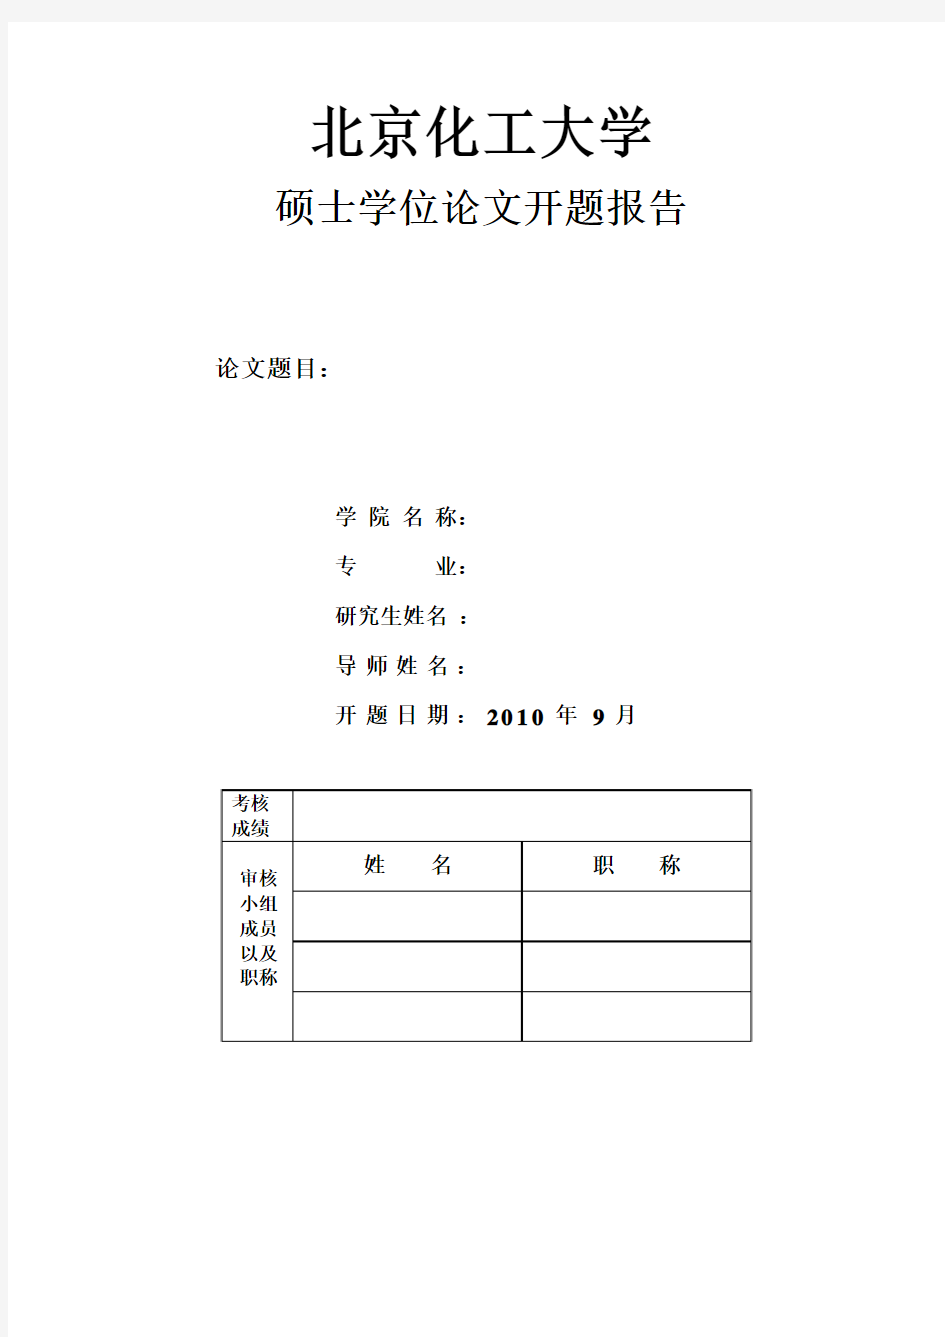 北京化工大学开题报告格式类